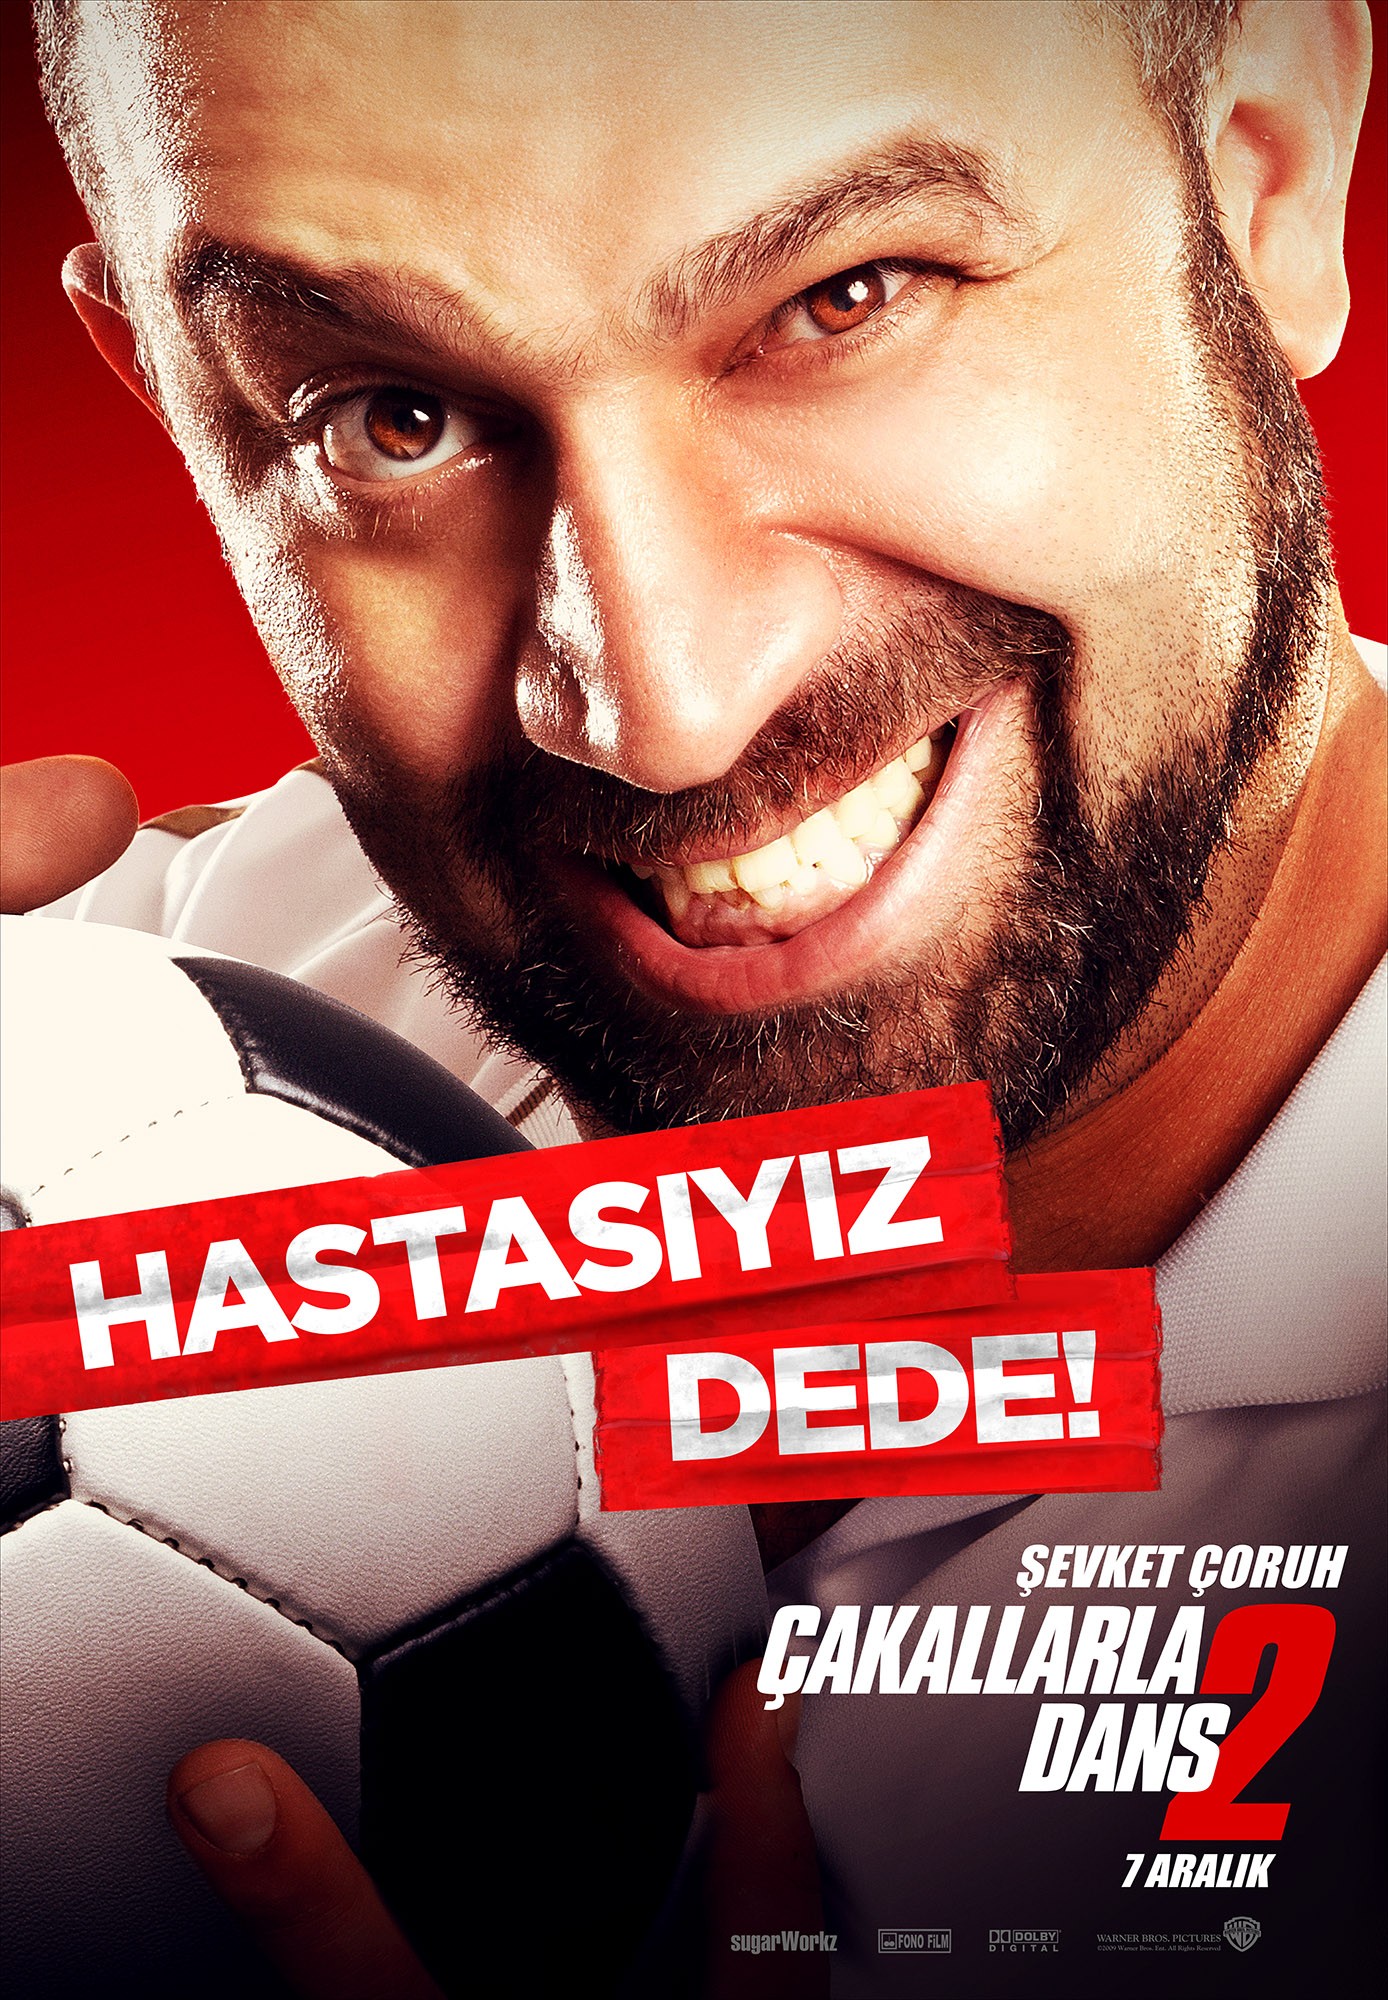 Mega Sized Movie Poster Image for Çakallarla dans 2 (#7 of 9)